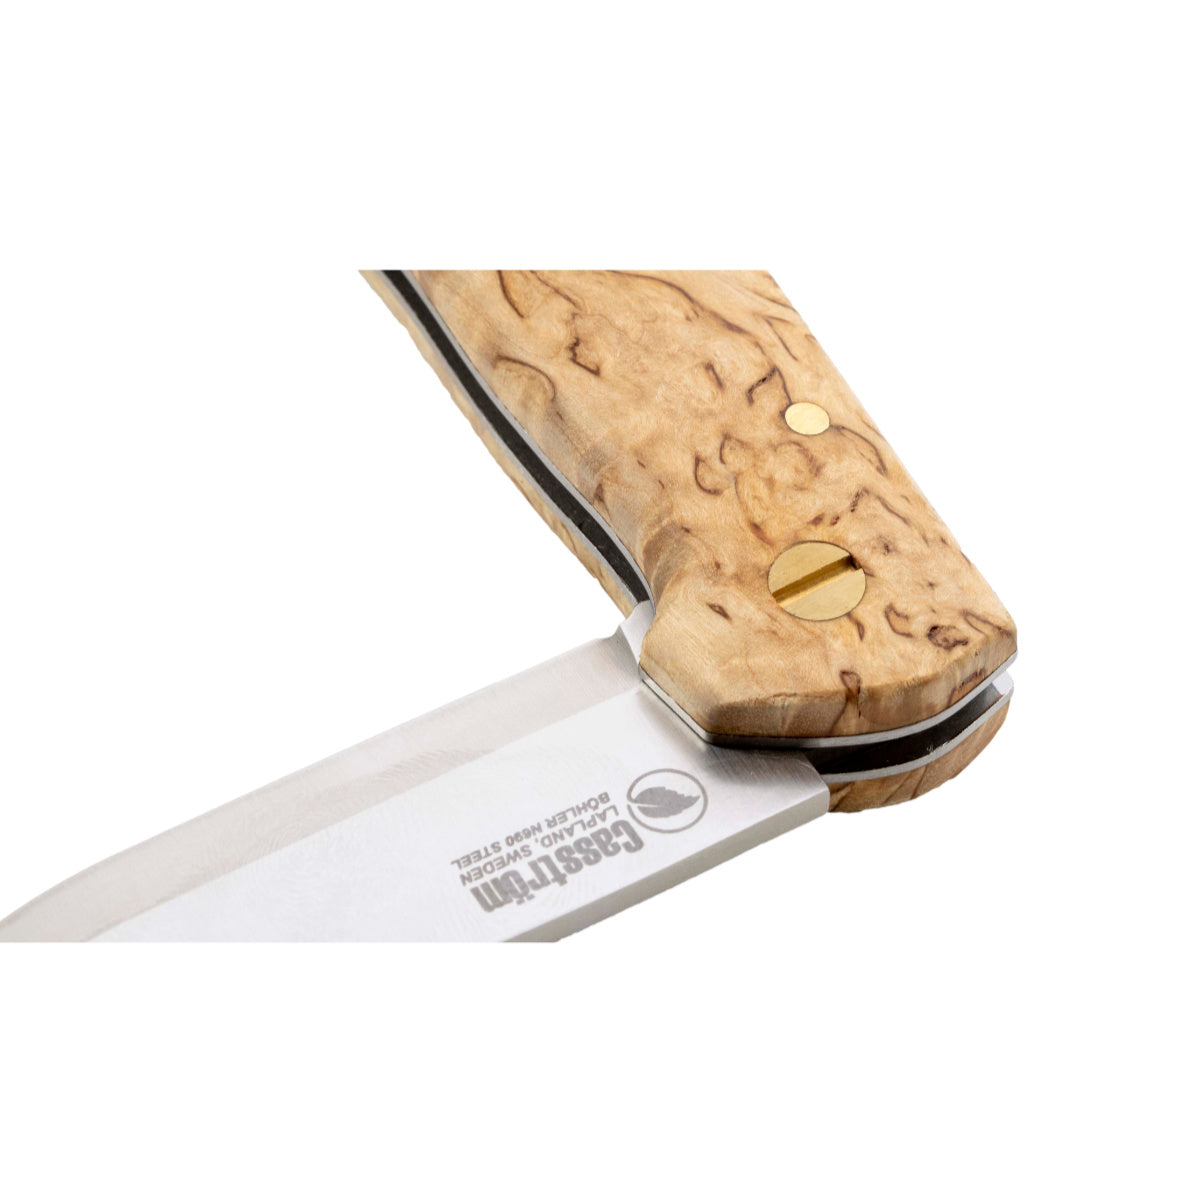 Casstrom Lars Falt Slip Joint  Folding Knife